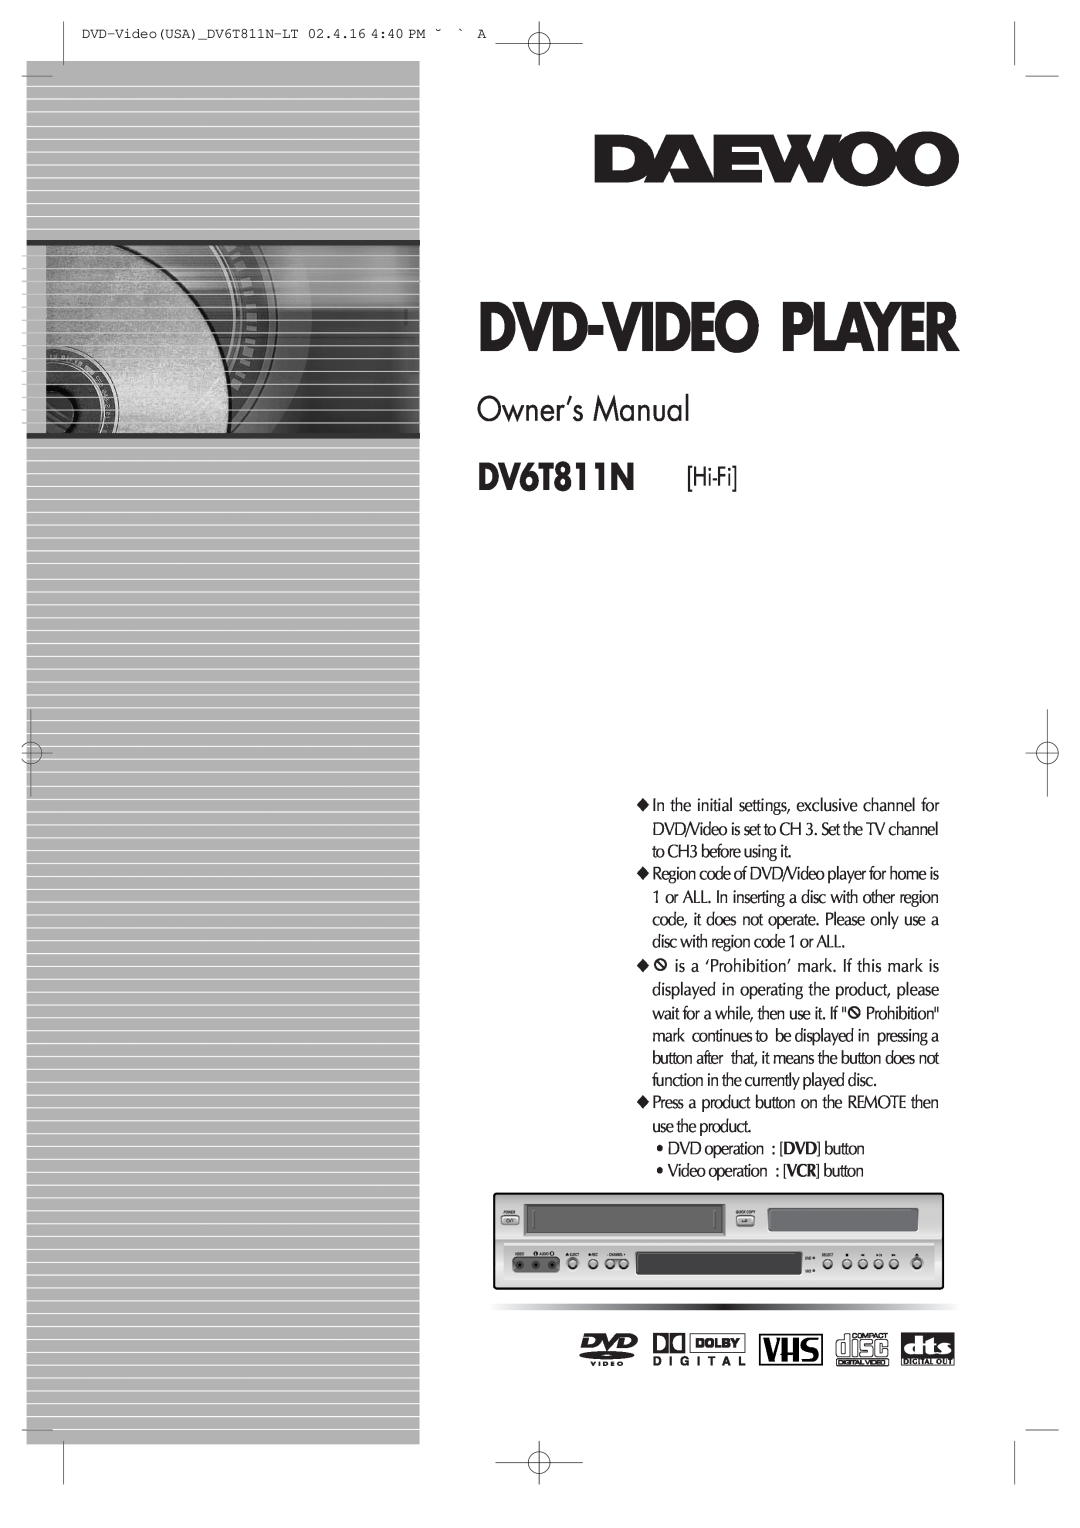 Daewoo owner manual Dvd-Video Player, DV6T811N Hi-Fi, Owner’s Manual 